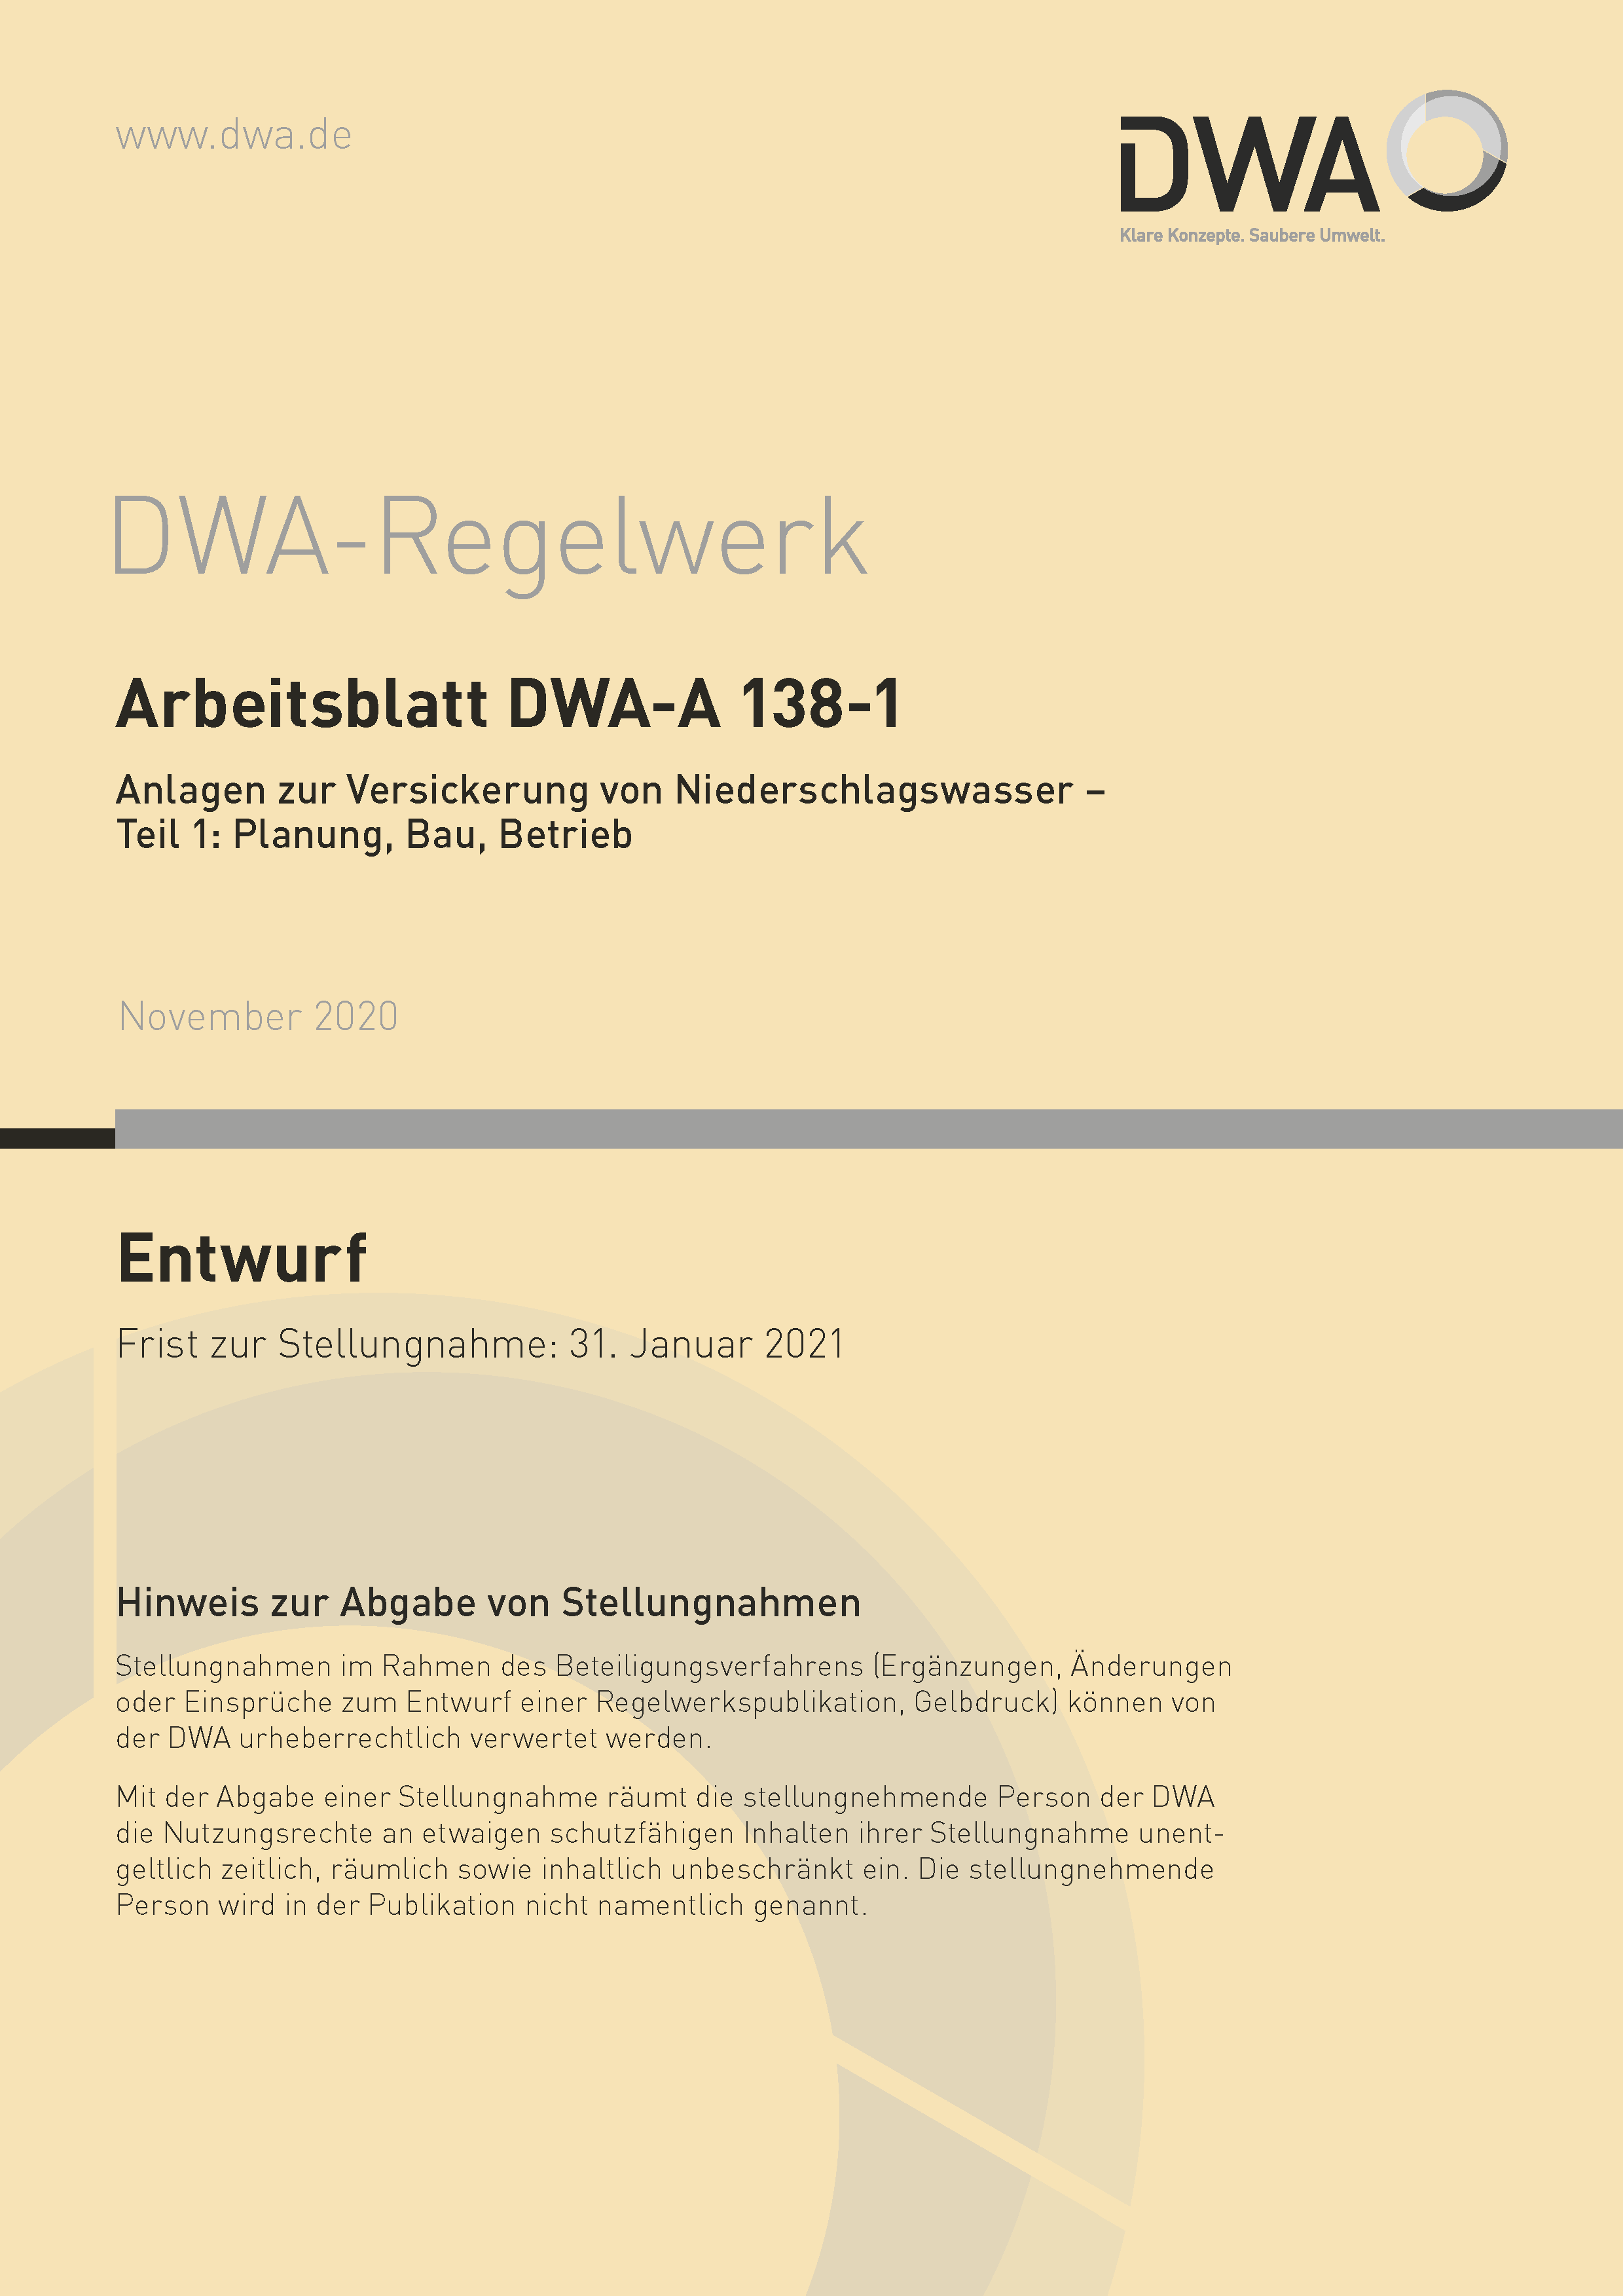 DWA-A 138 -1 - Anlagen zur Versickerung von Niederschlagswasser - Teil 1: Planung, Bau, Betrieb - Entwurf November 2020